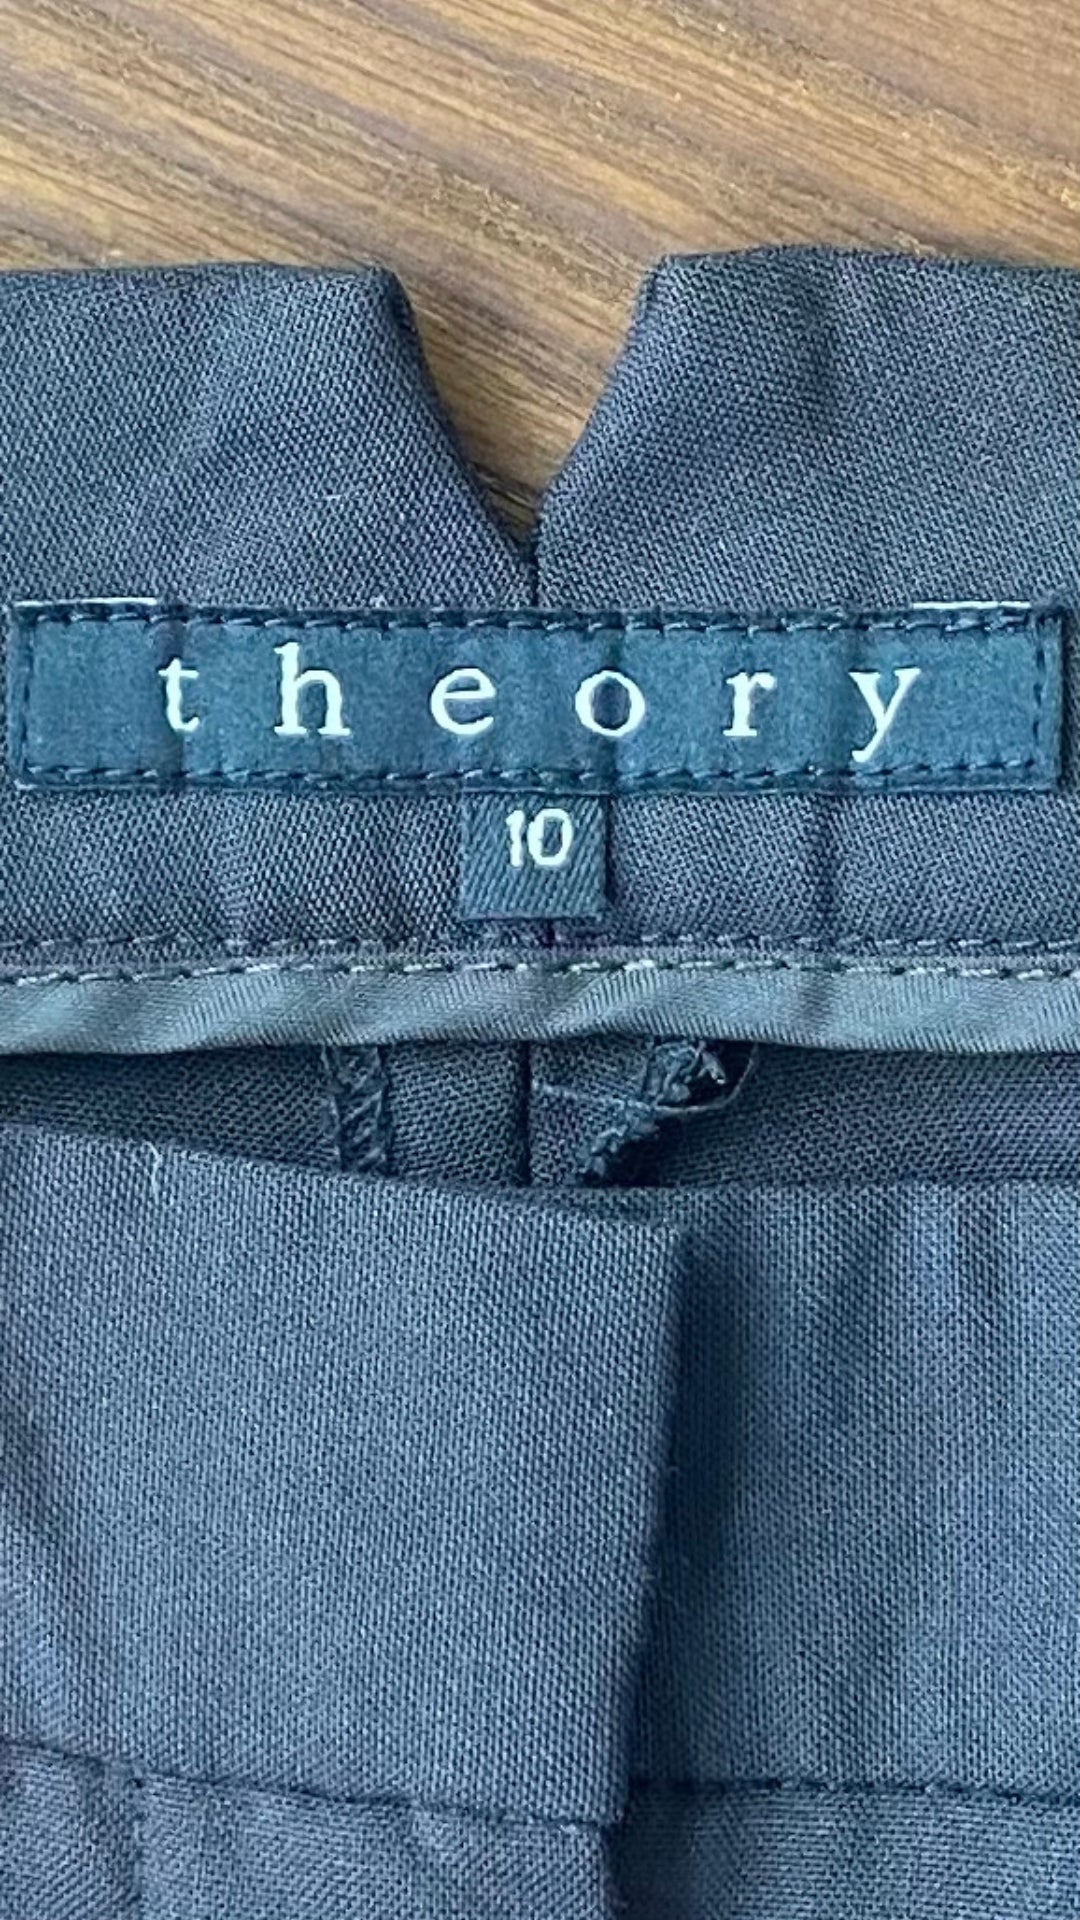 Pantalon Theory noir en très fin lainage, vue de l'étiquette de marque et taille.